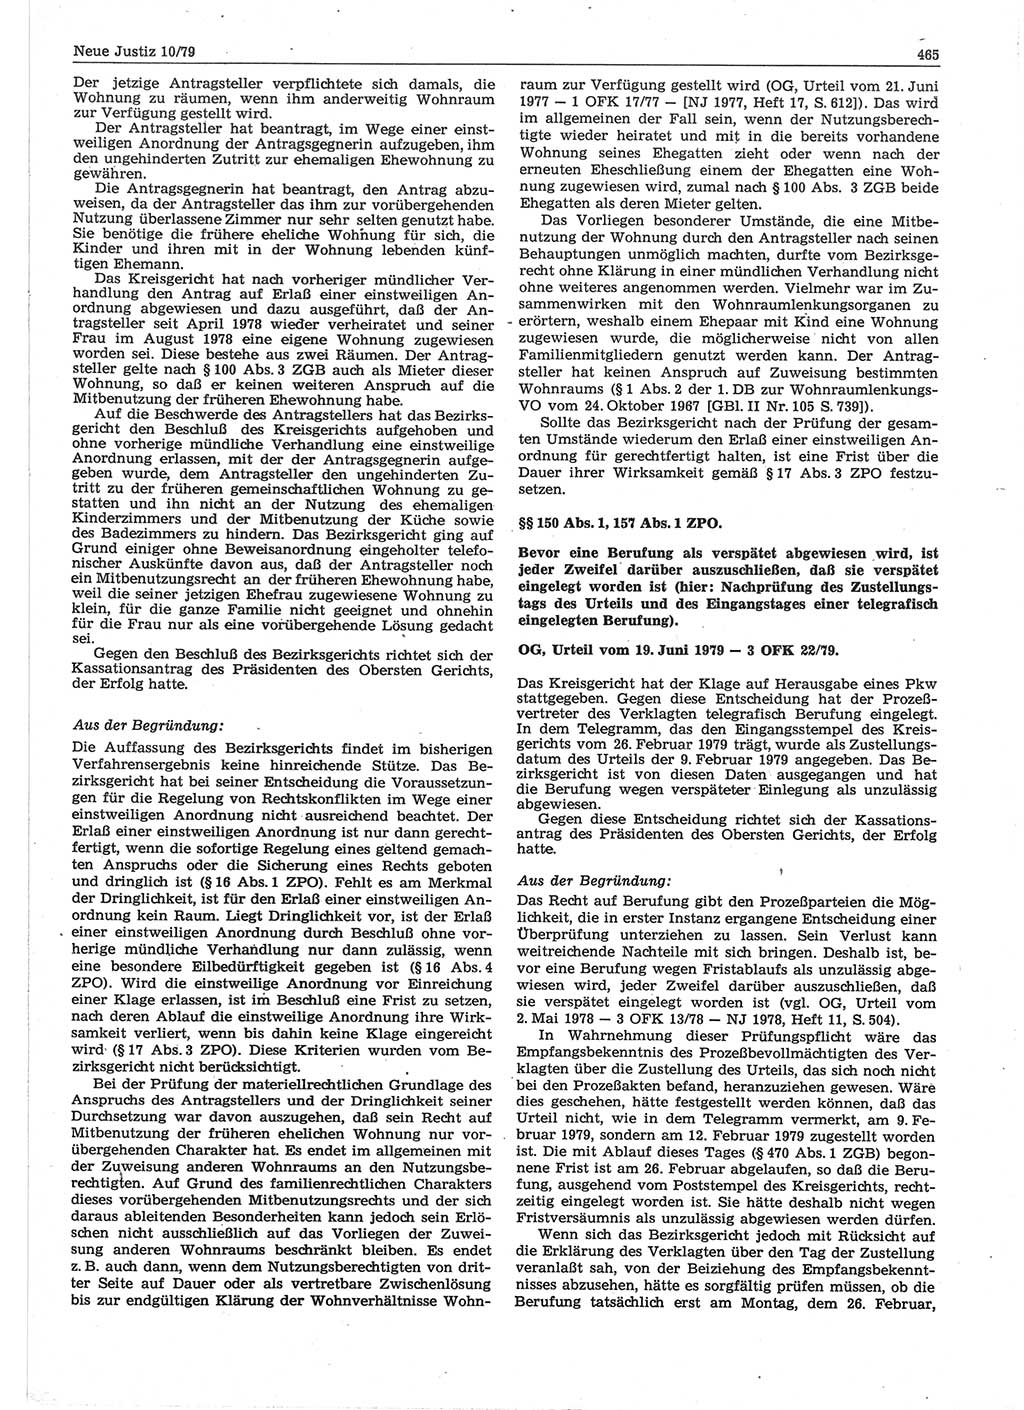 Neue Justiz (NJ), Zeitschrift für sozialistisches Recht und Gesetzlichkeit [Deutsche Demokratische Republik (DDR)], 33. Jahrgang 1979, Seite 465 (NJ DDR 1979, S. 465)